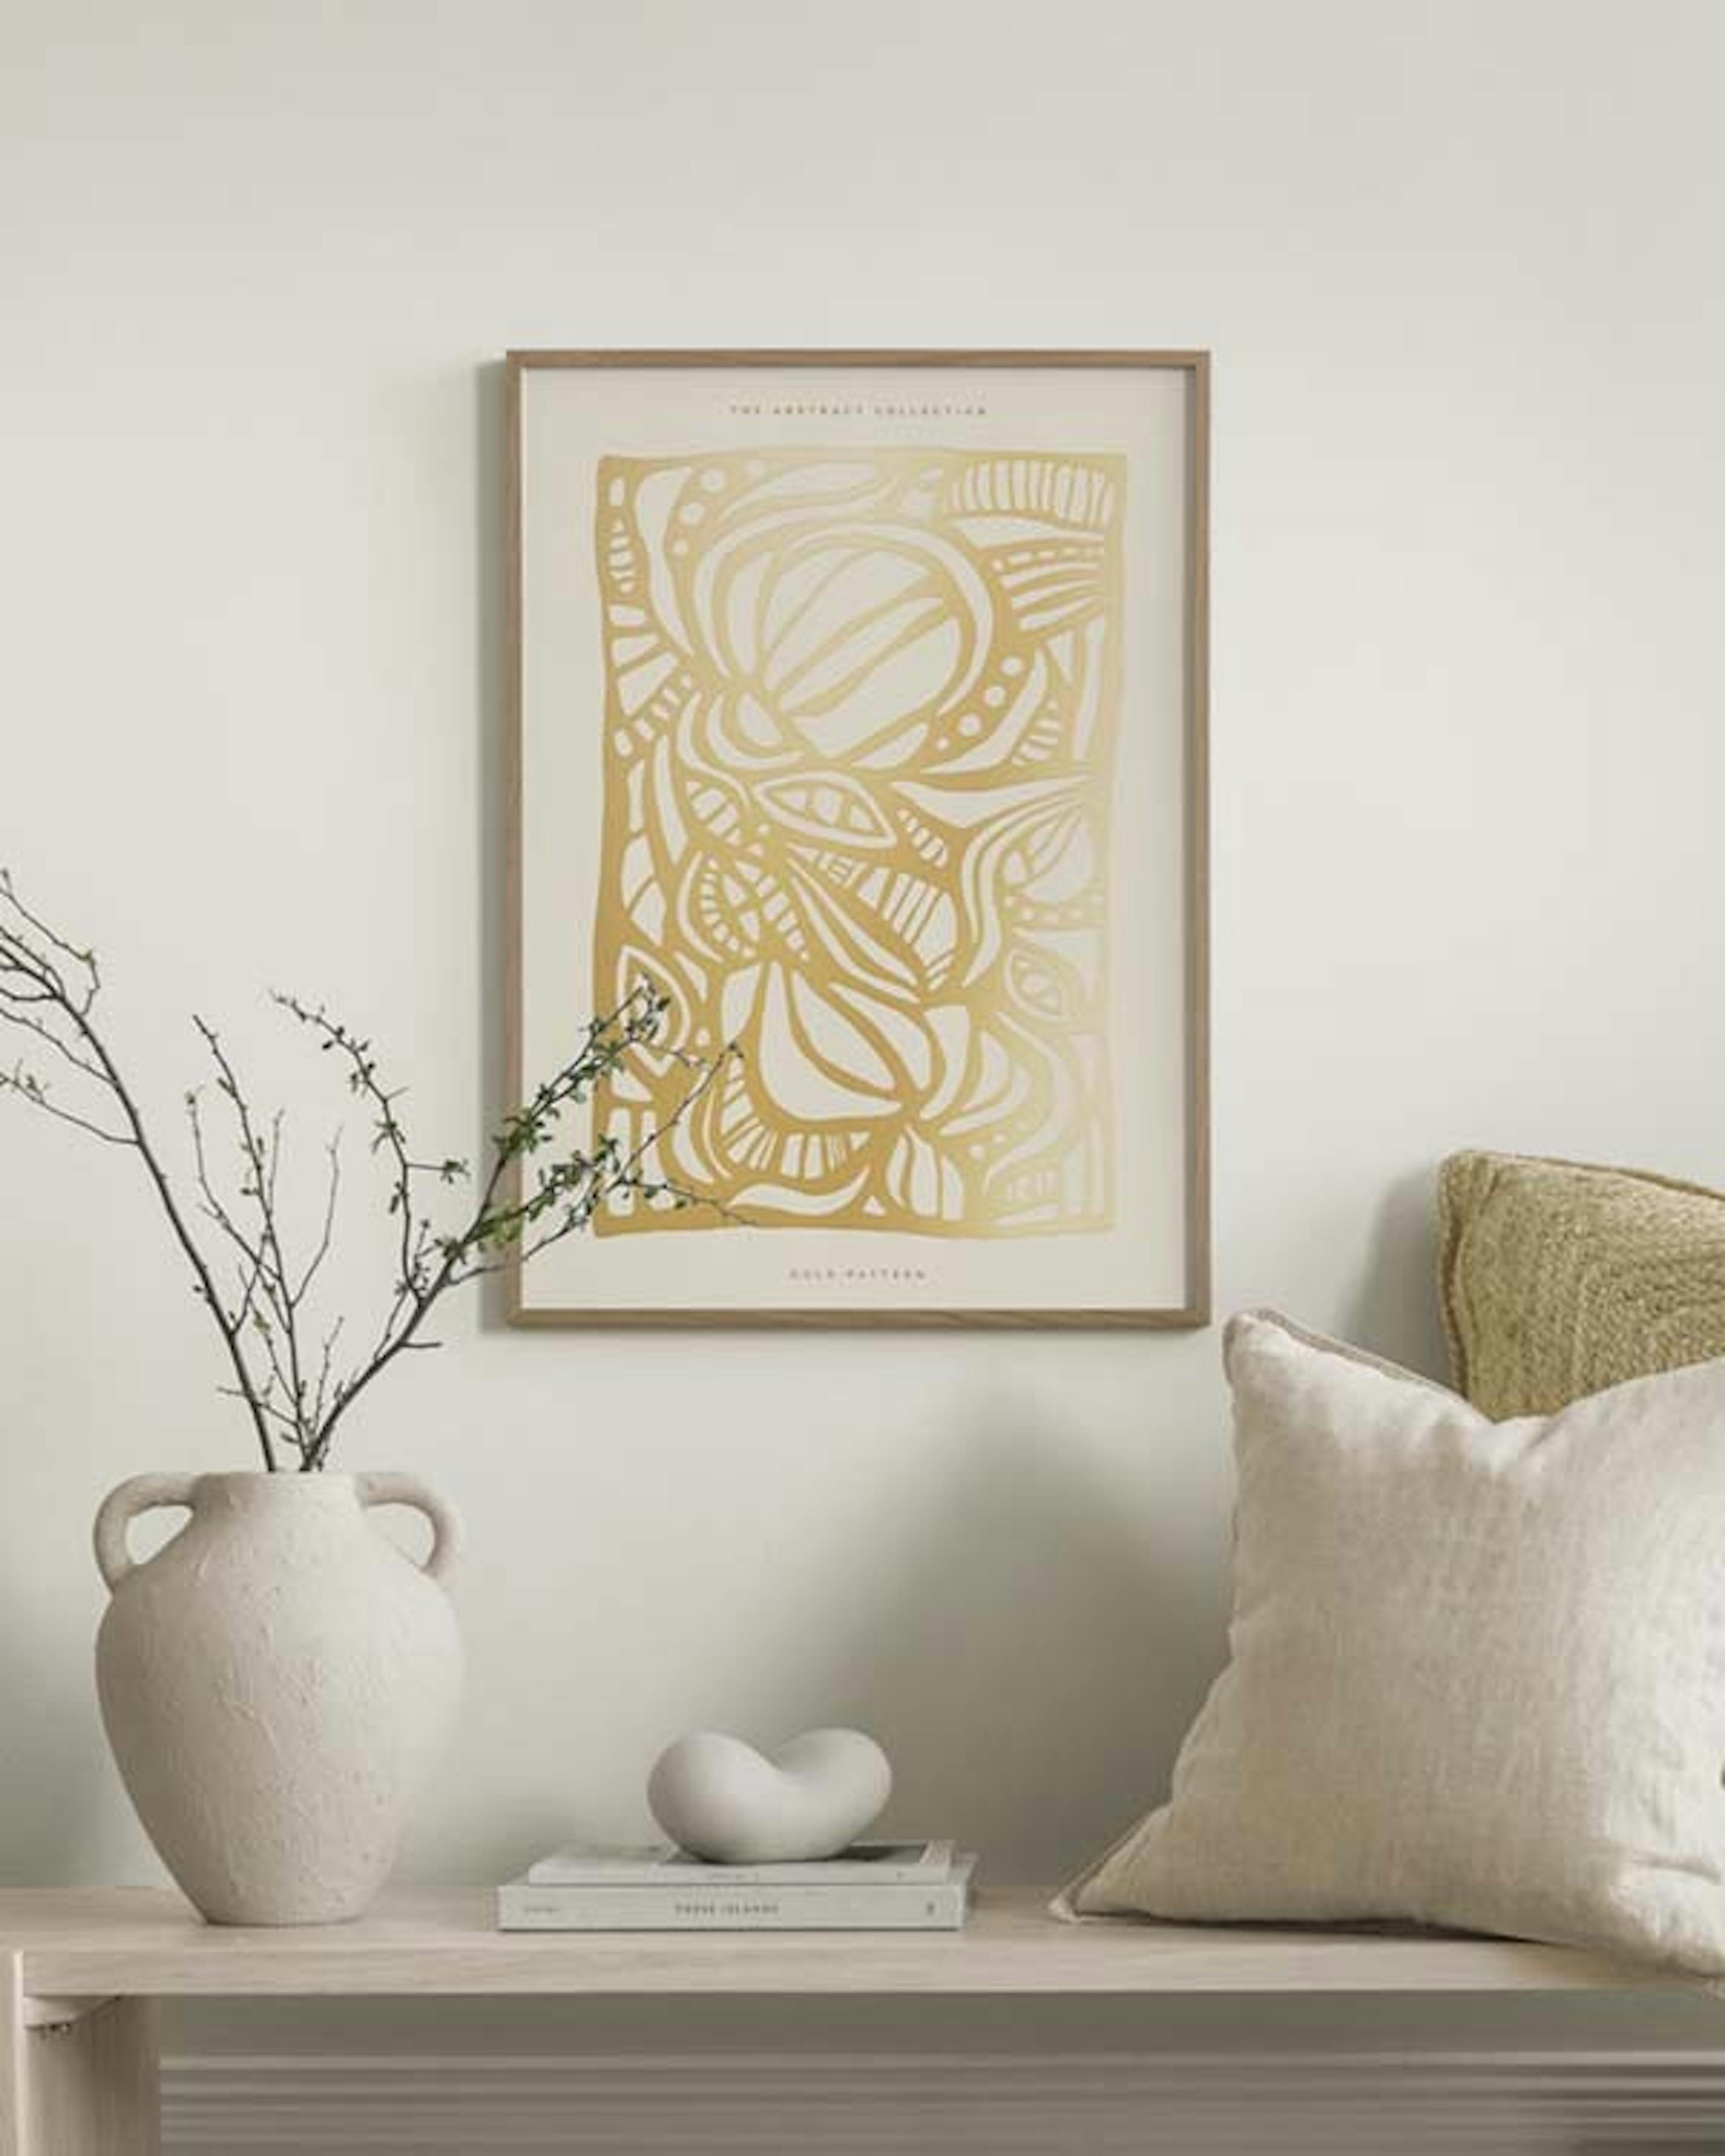 Gold Pattern Print